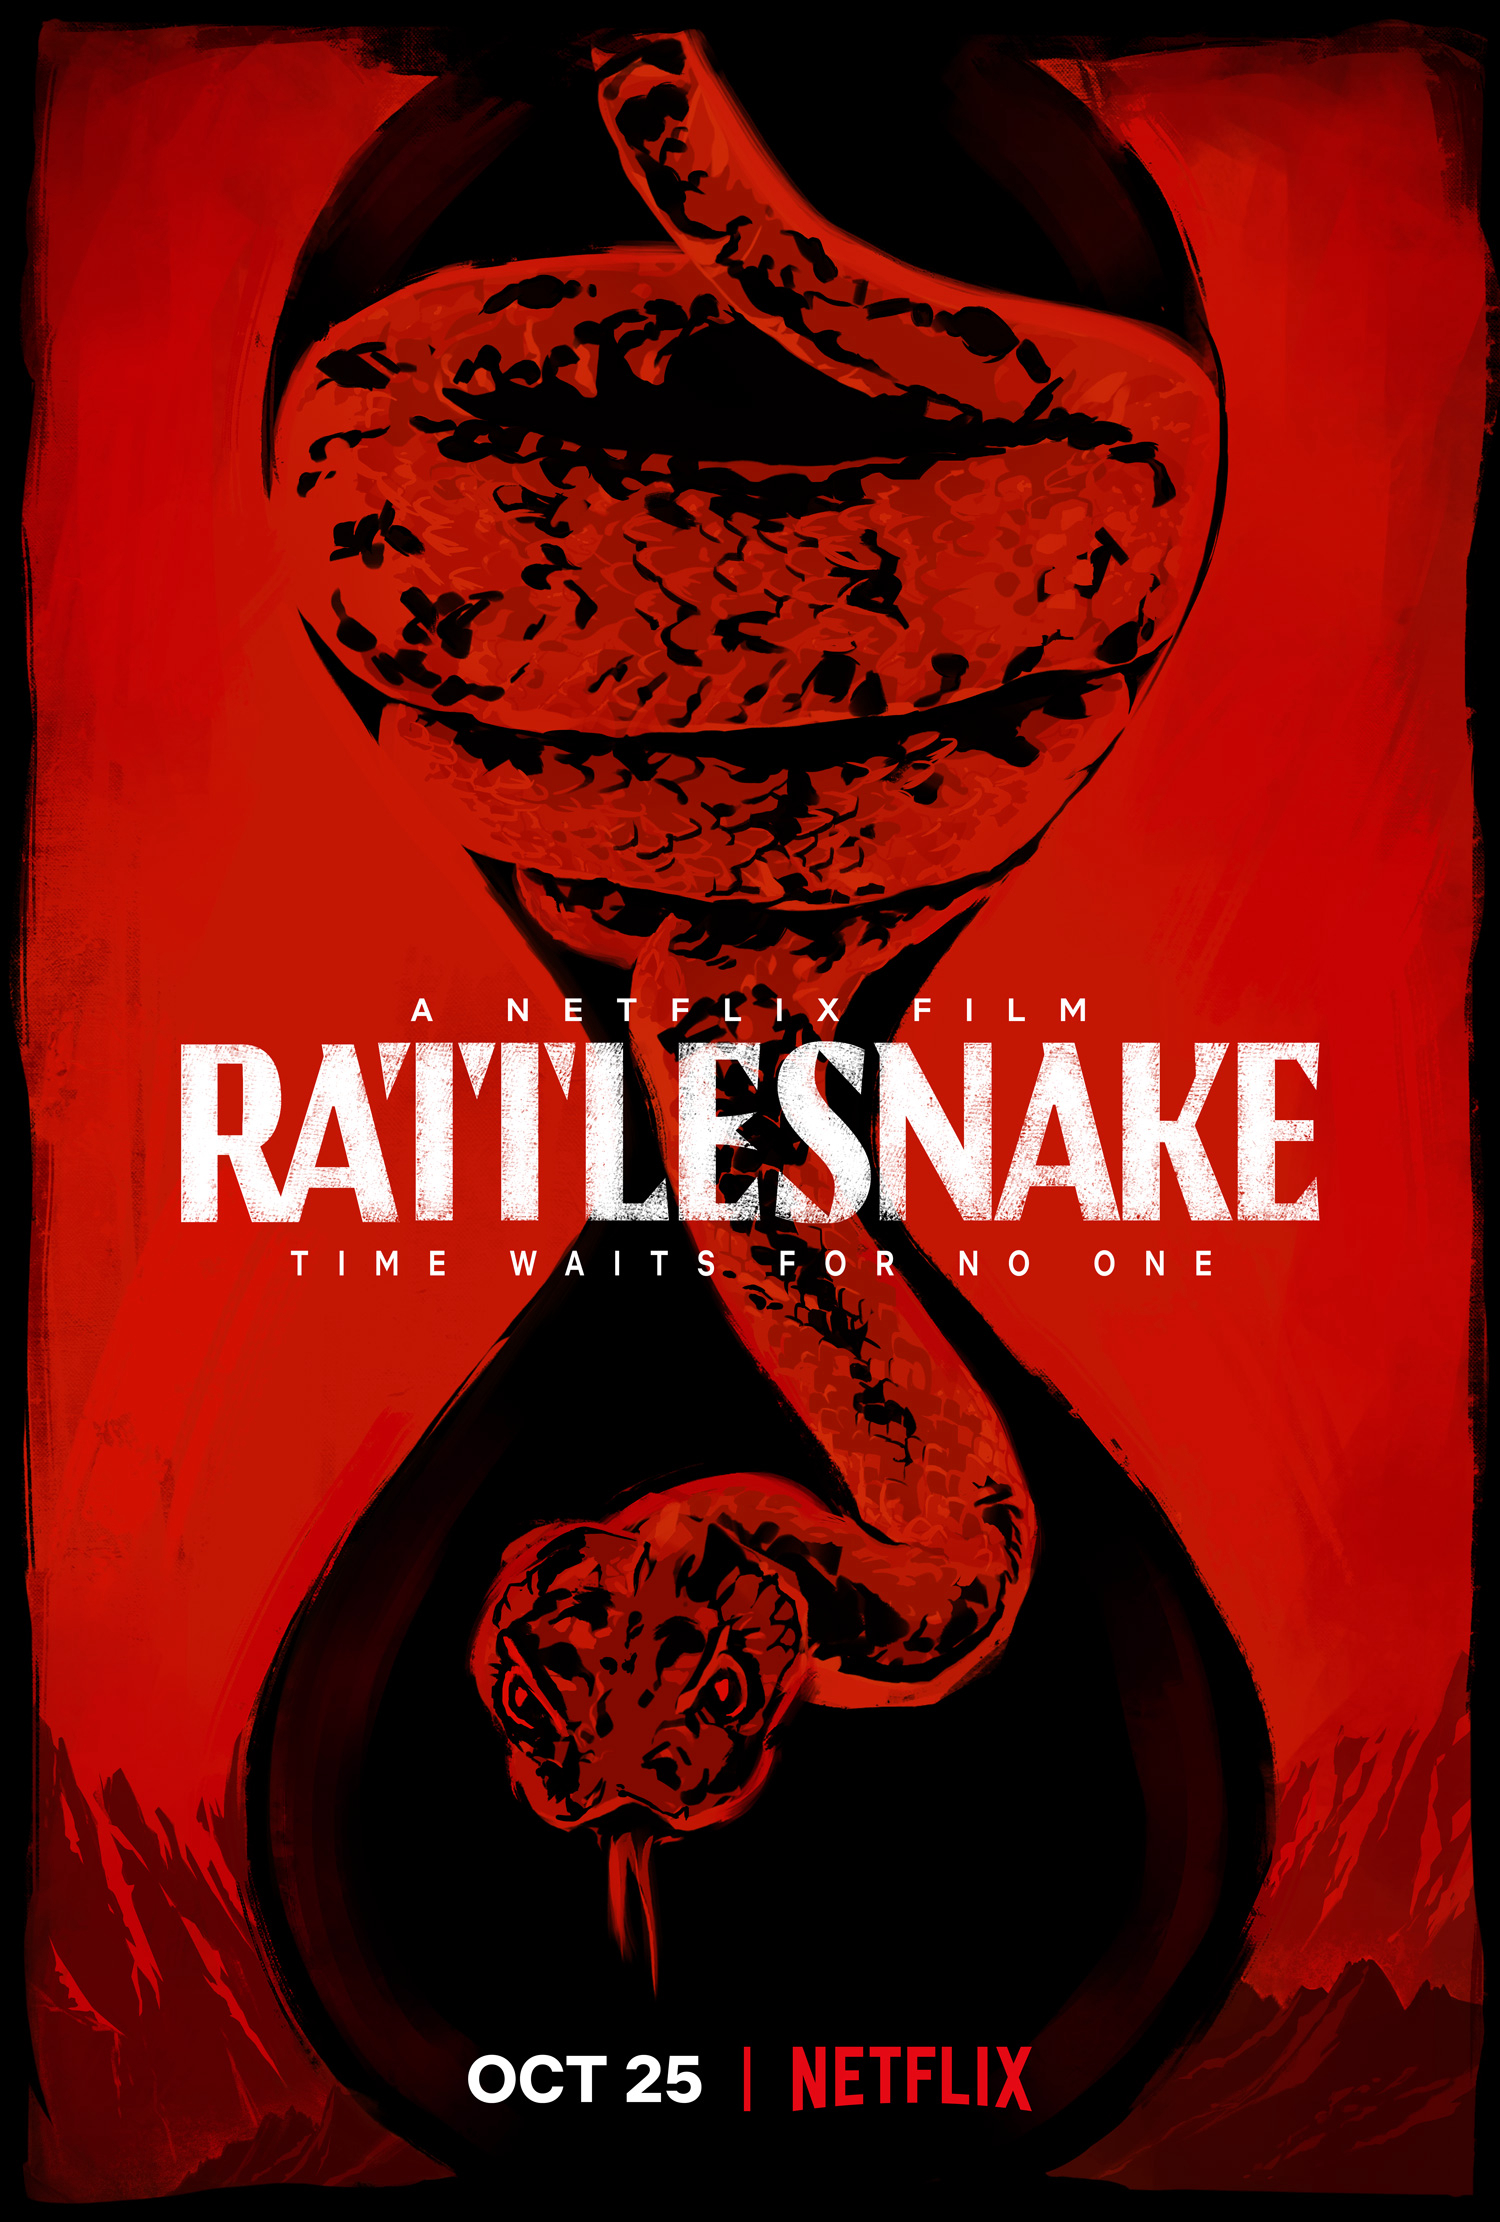 Poster Phim Rắn Đuôi Chuông (Rattlesnake)